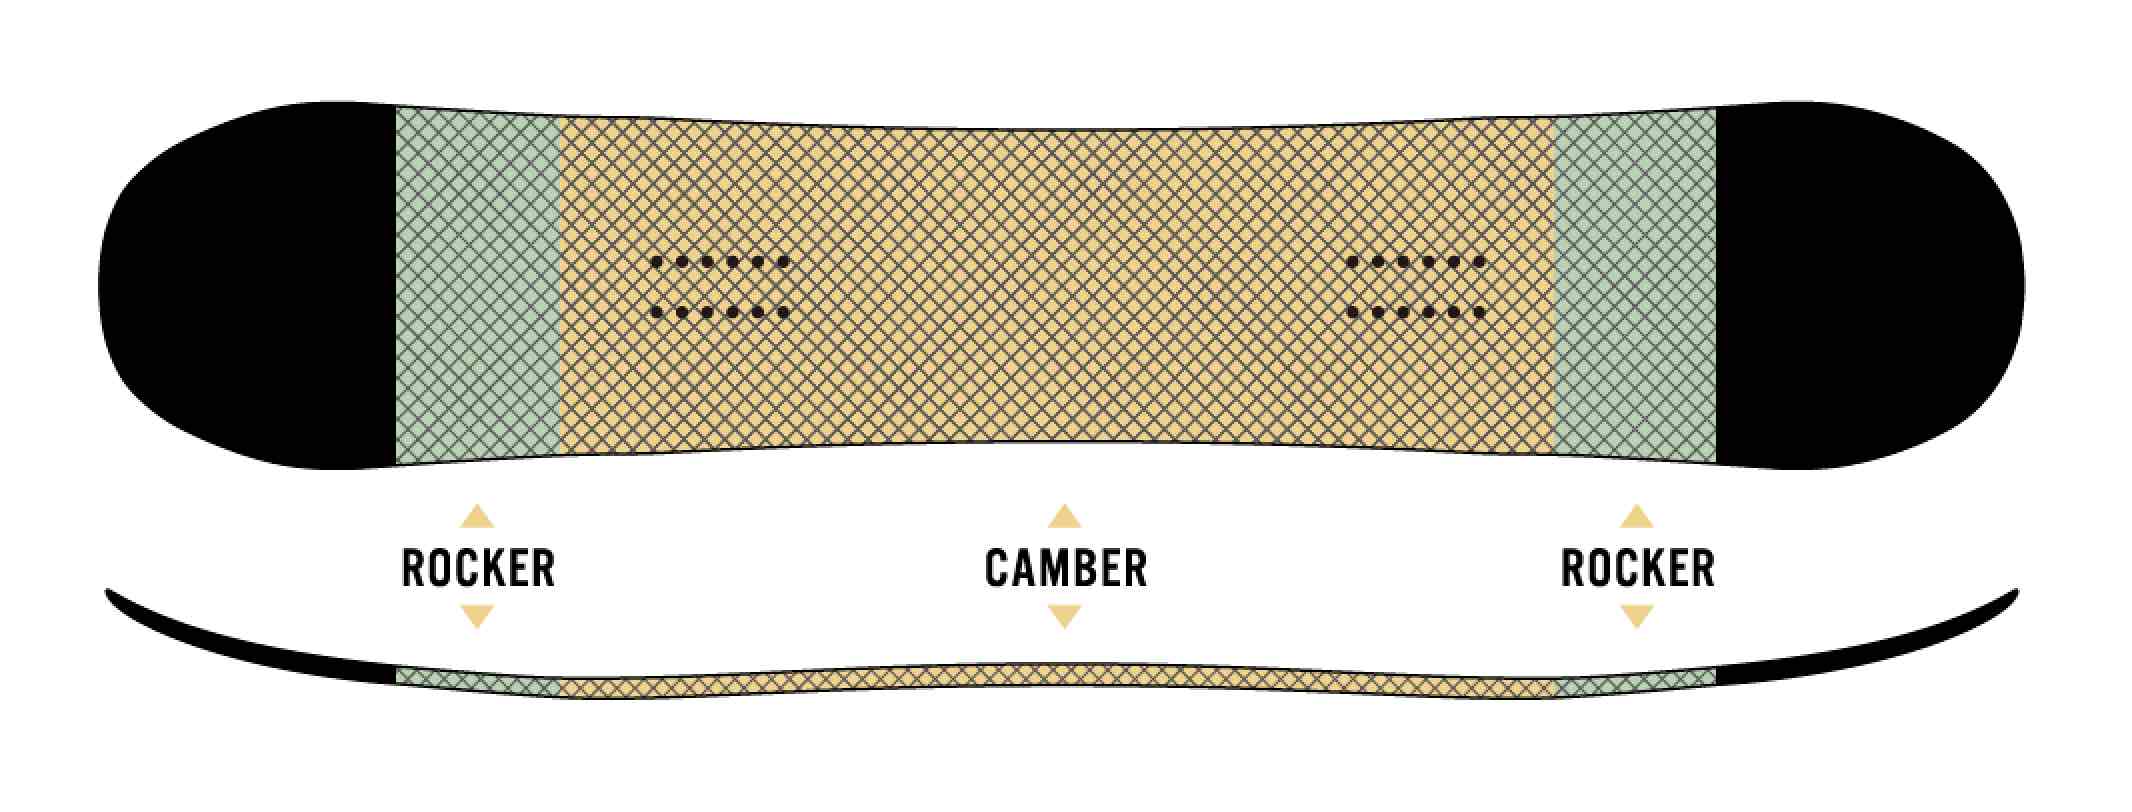 ボードのセンター部分はキャンバーで、ノーズとテールに少しだけロッカーを取り入れたCAMROCK。キャンバーが得意とするキレのあるエッジングと高い反発力、そしてロッカー特有の取り回しのよさを併せ持っている。オールラウンドに遊べるCAMROCK仕様がこのボードの特徴だ